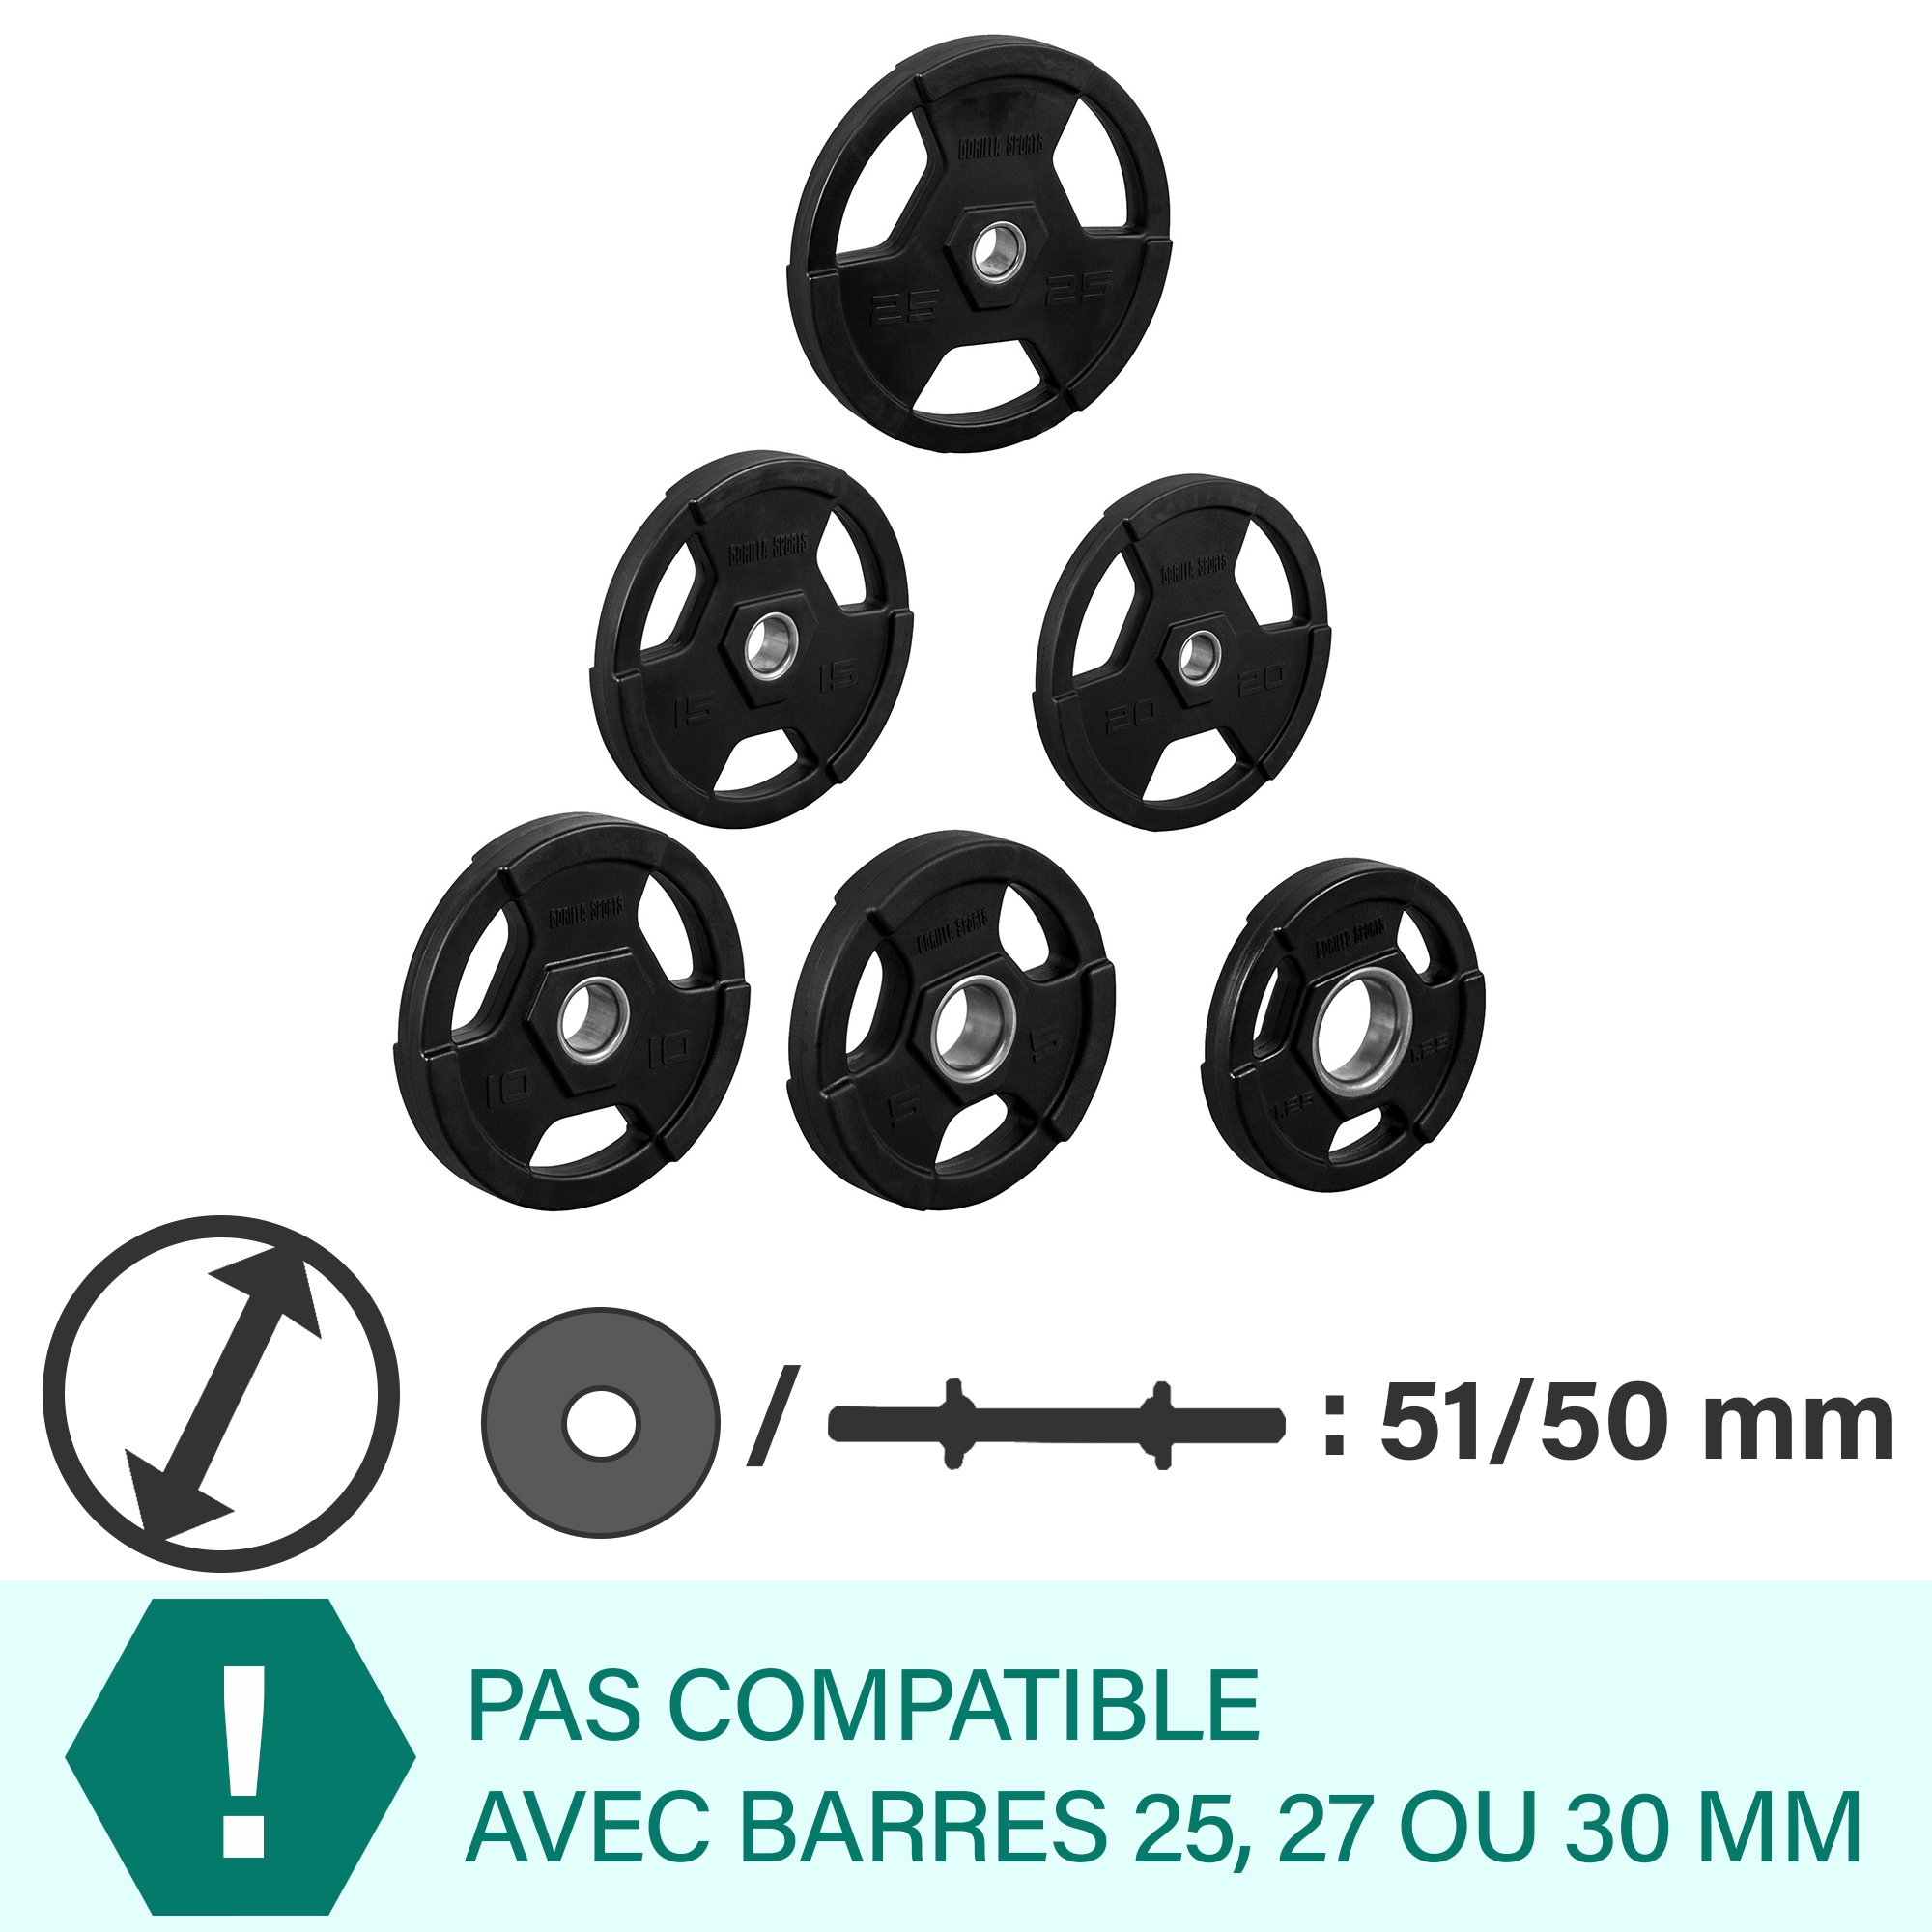 Poids disques olympiques en fonte rÃªvetement caoutchouc avec anneau mÃ©tallique de 51mm - de 1,25 Ã 25 kg